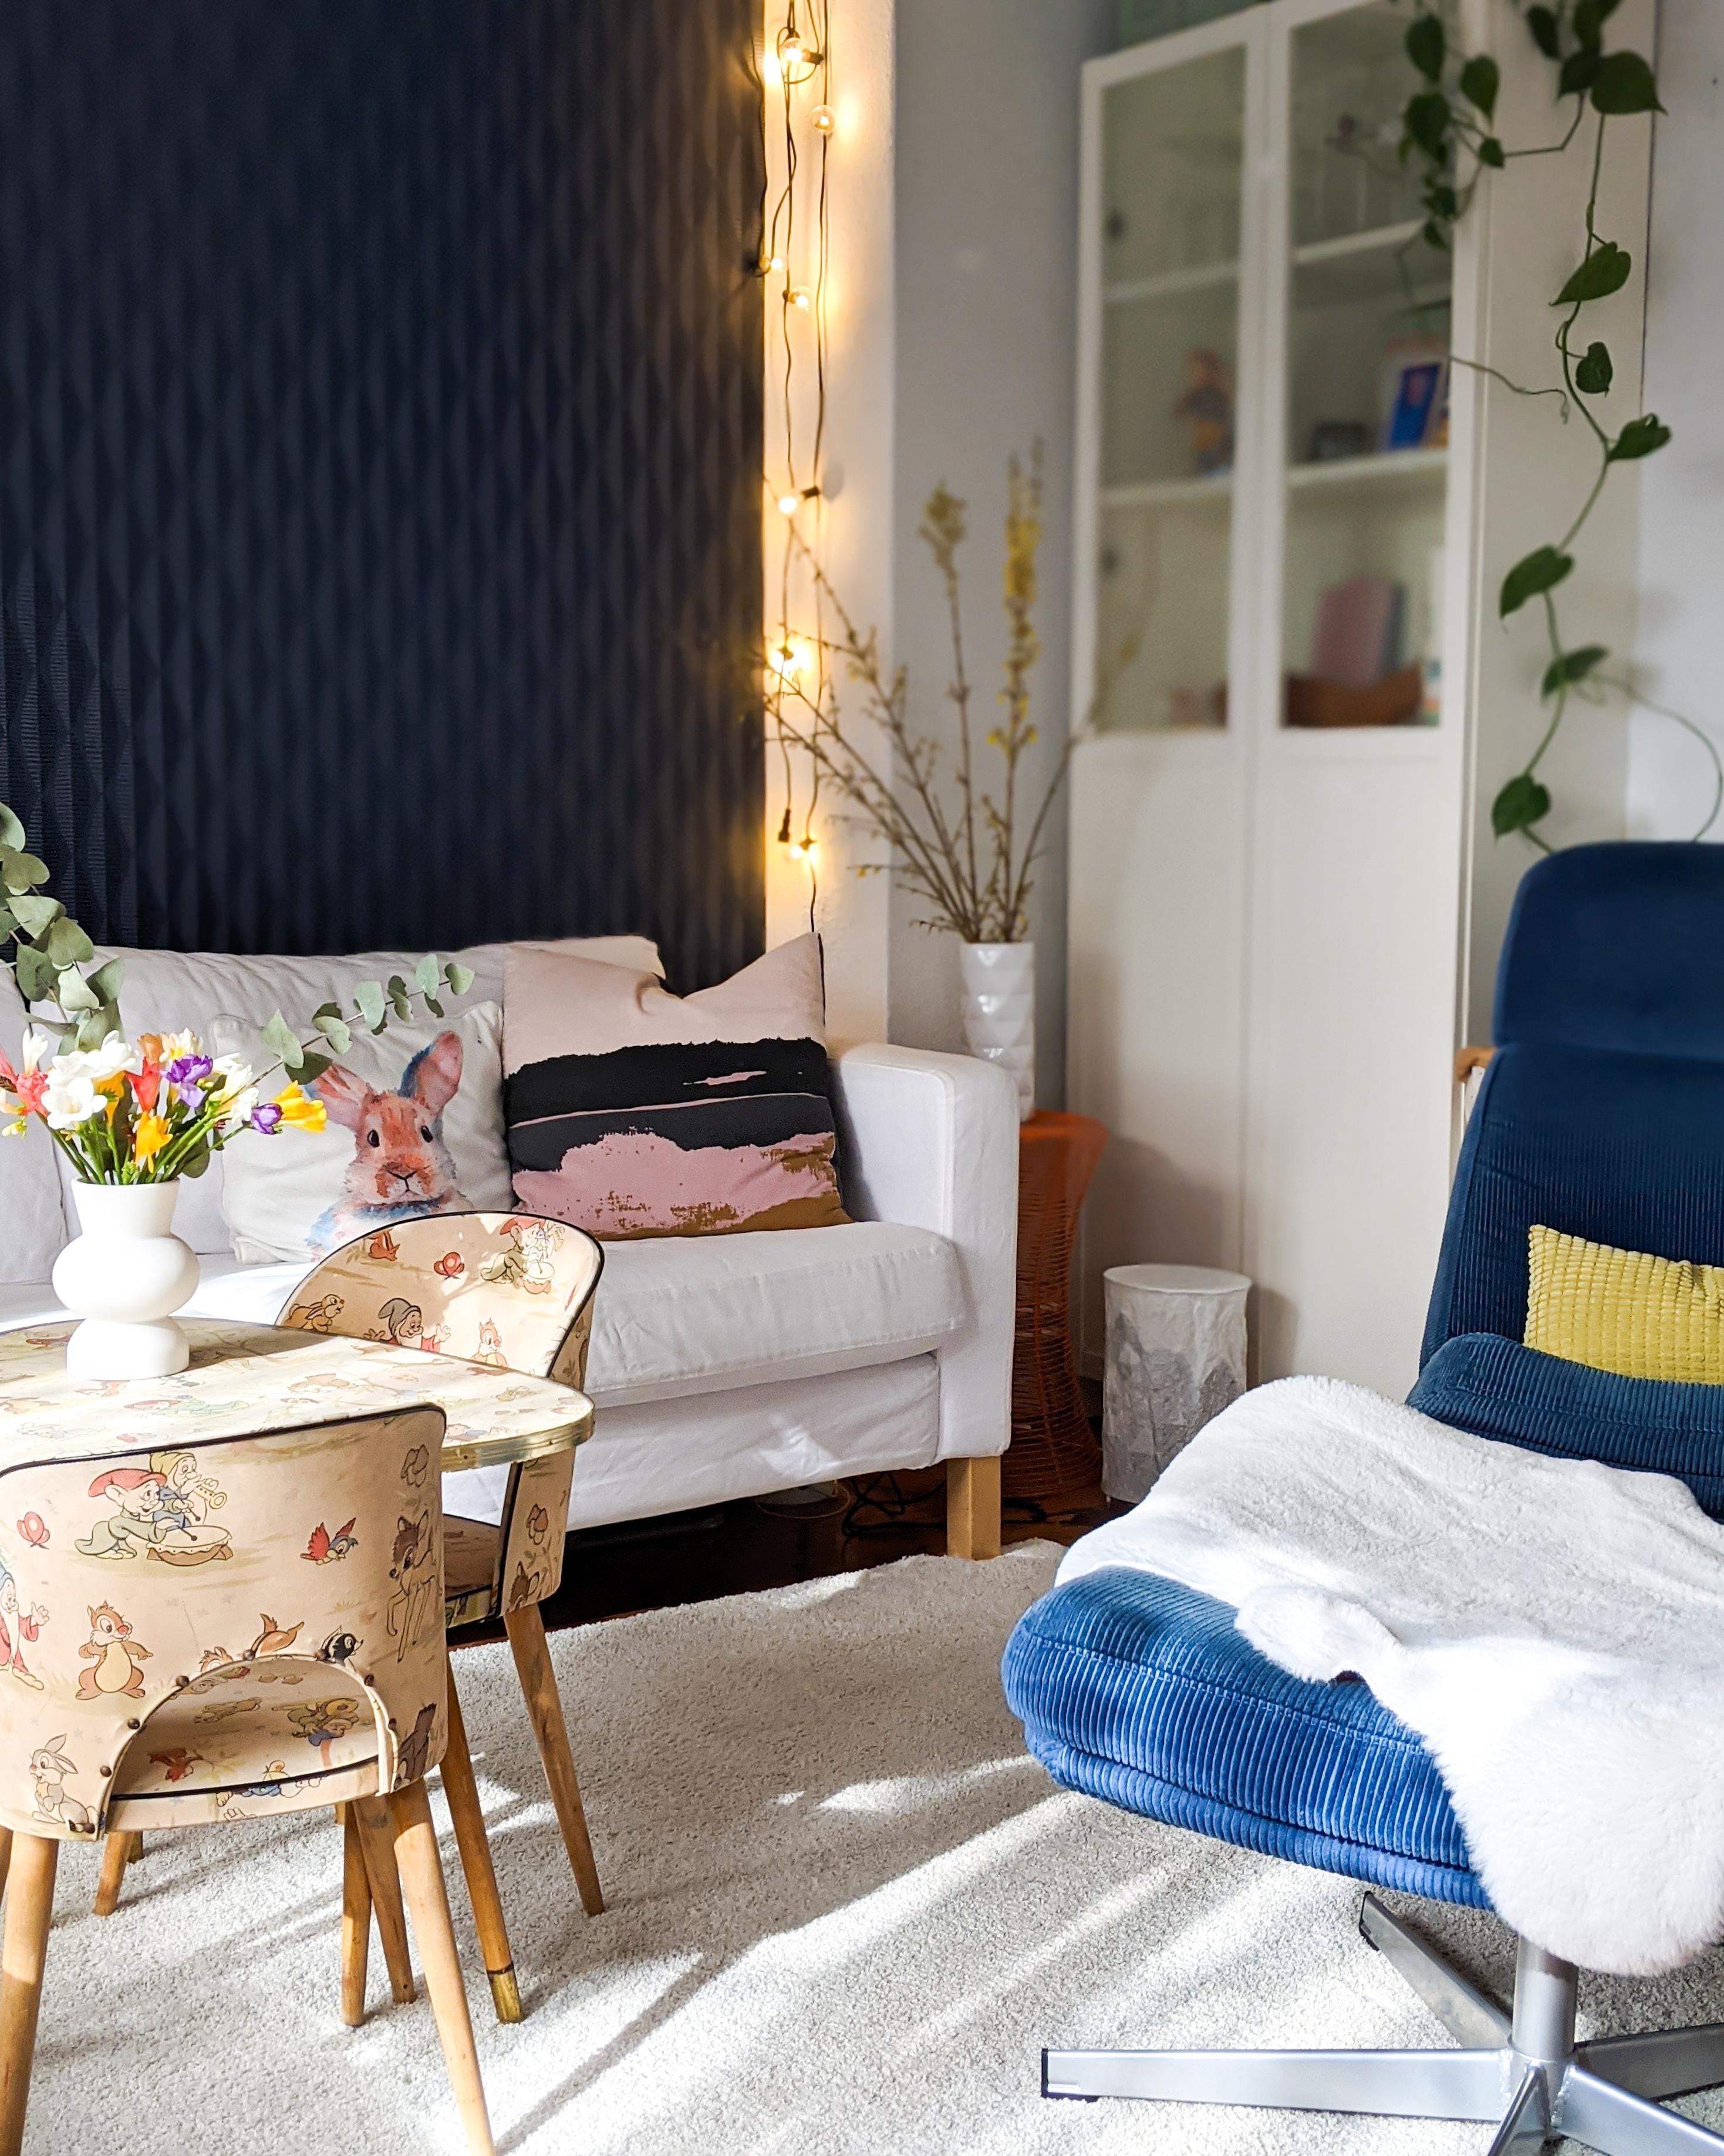 Licht im #vintage #wohnzimmer. Diese #sonne ist herrlich

#Blumen #livingroominterior #livingroominspo #wallpaper 